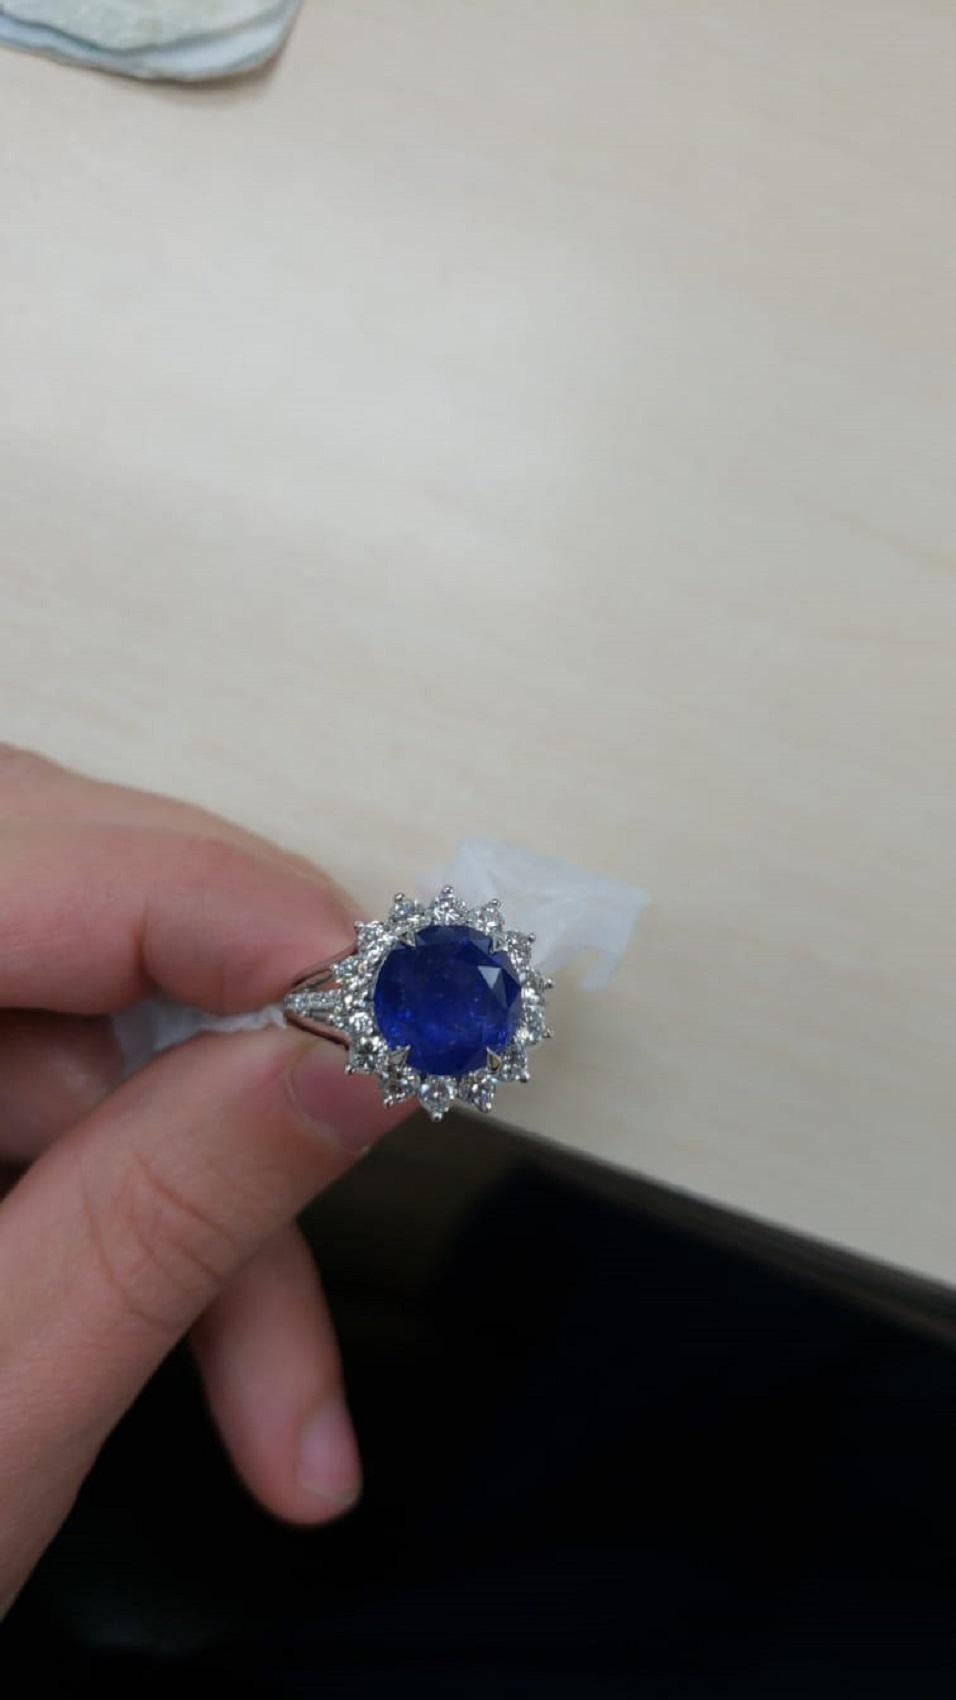 Une bague de style iconique et TRES ELEGANT Ceylon Natural Gorgeous Deep Blue Sapphire & Diamond Cluster Ring.
Le saphir central à taille ronde est l'un des modèles les plus reconnus.  3,50 ct. Certifié par le GIA avec , Couleur bleue. Belle couleur